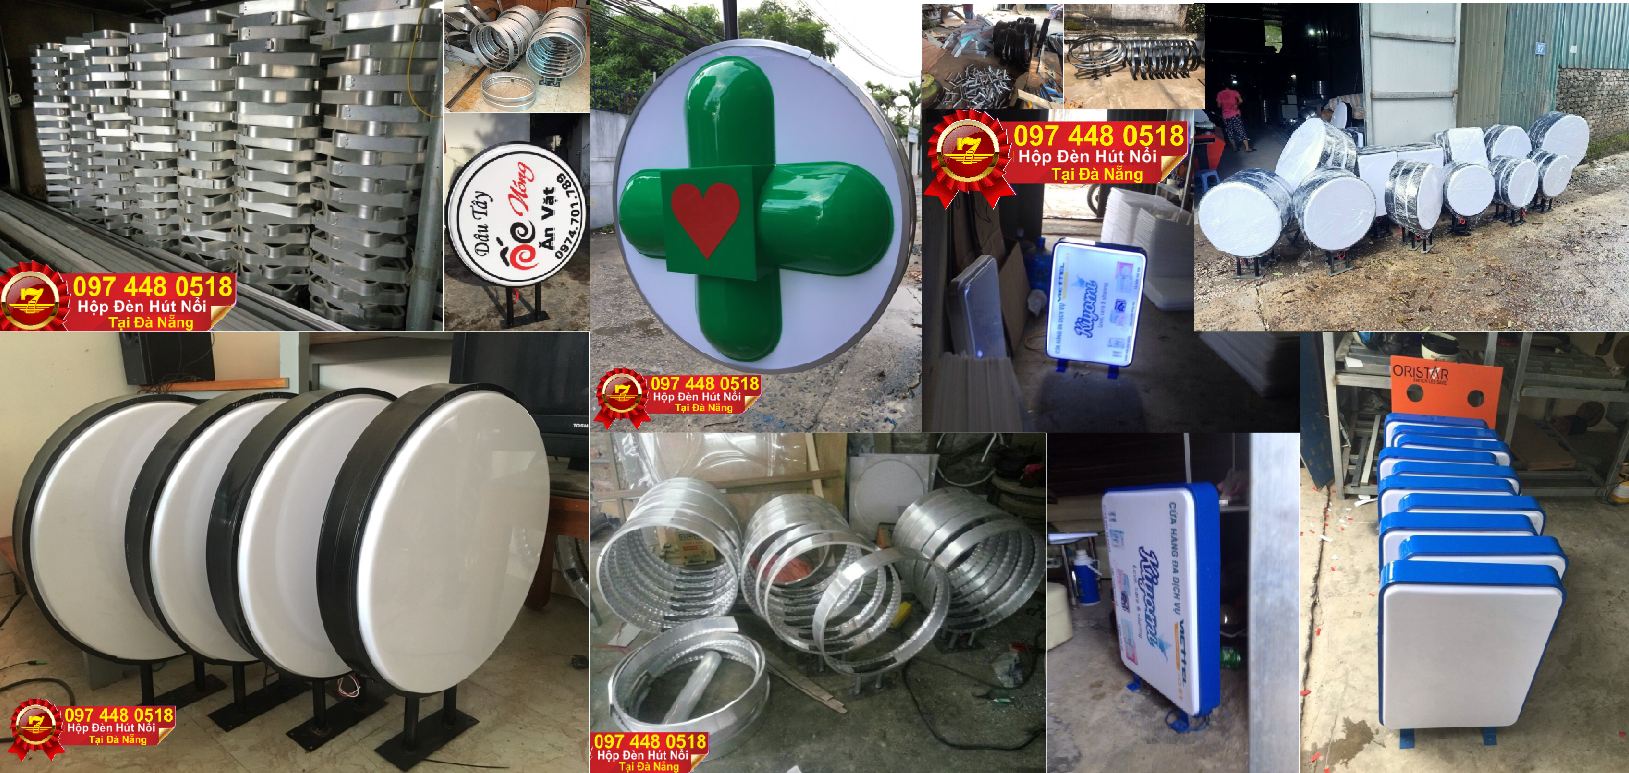 Xưởng chuyên gia công làm mica hút nổi, phân phối hộp đèn hút nổi giá rẻ tại Đà Nẵng.